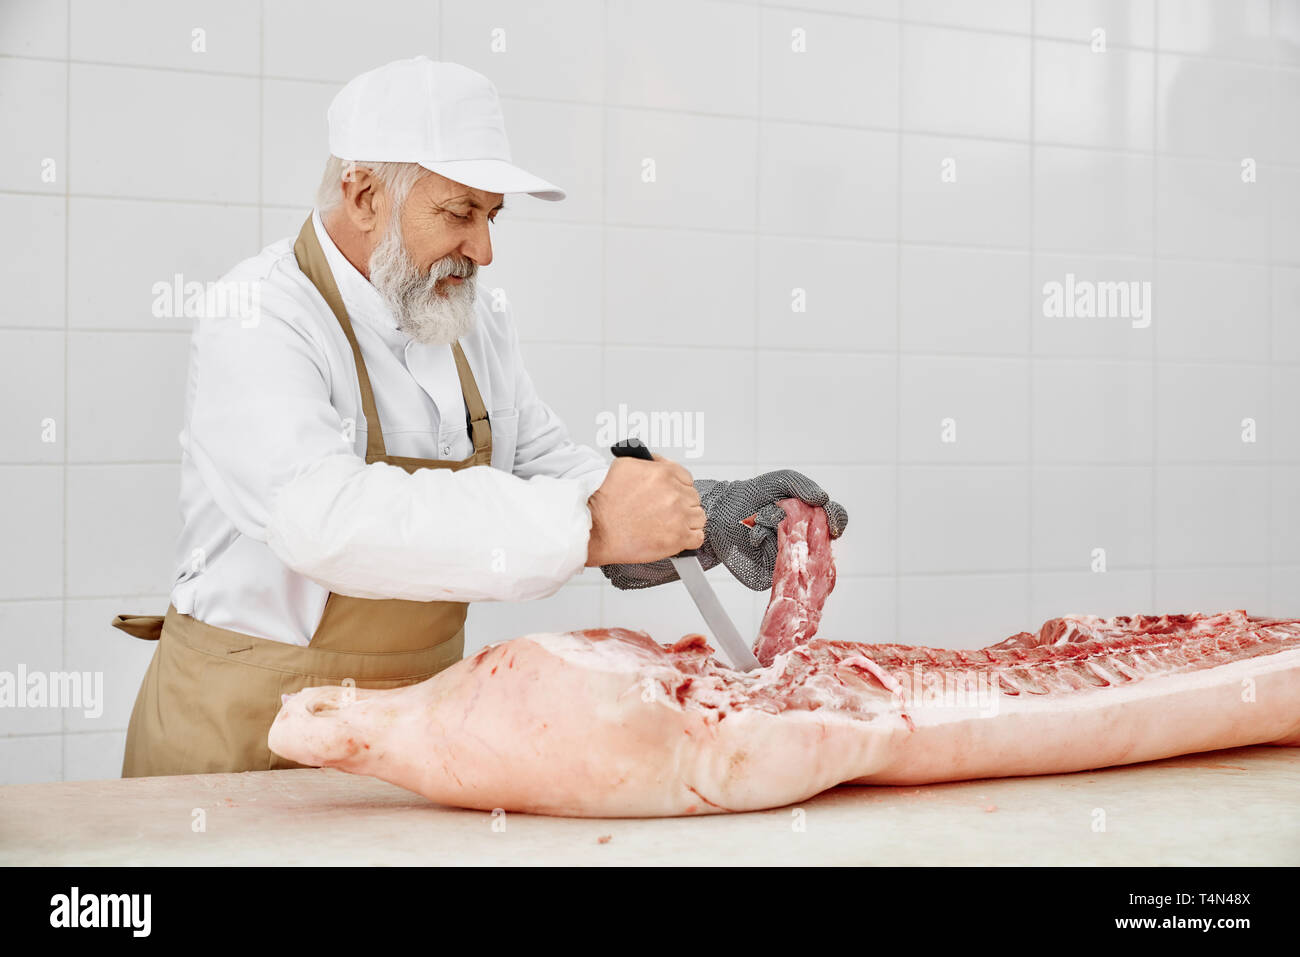 Ältere Metzger schneiden Schweinefleisch Schlachtkörper mit Messer. Stattliche Arbeiter mit grauen Bart in weiße Uniform, braune Schürze und spezielle Handschuhe schneiden frisches Fleisch auf Tabelle der Metzgerei. Stockfoto